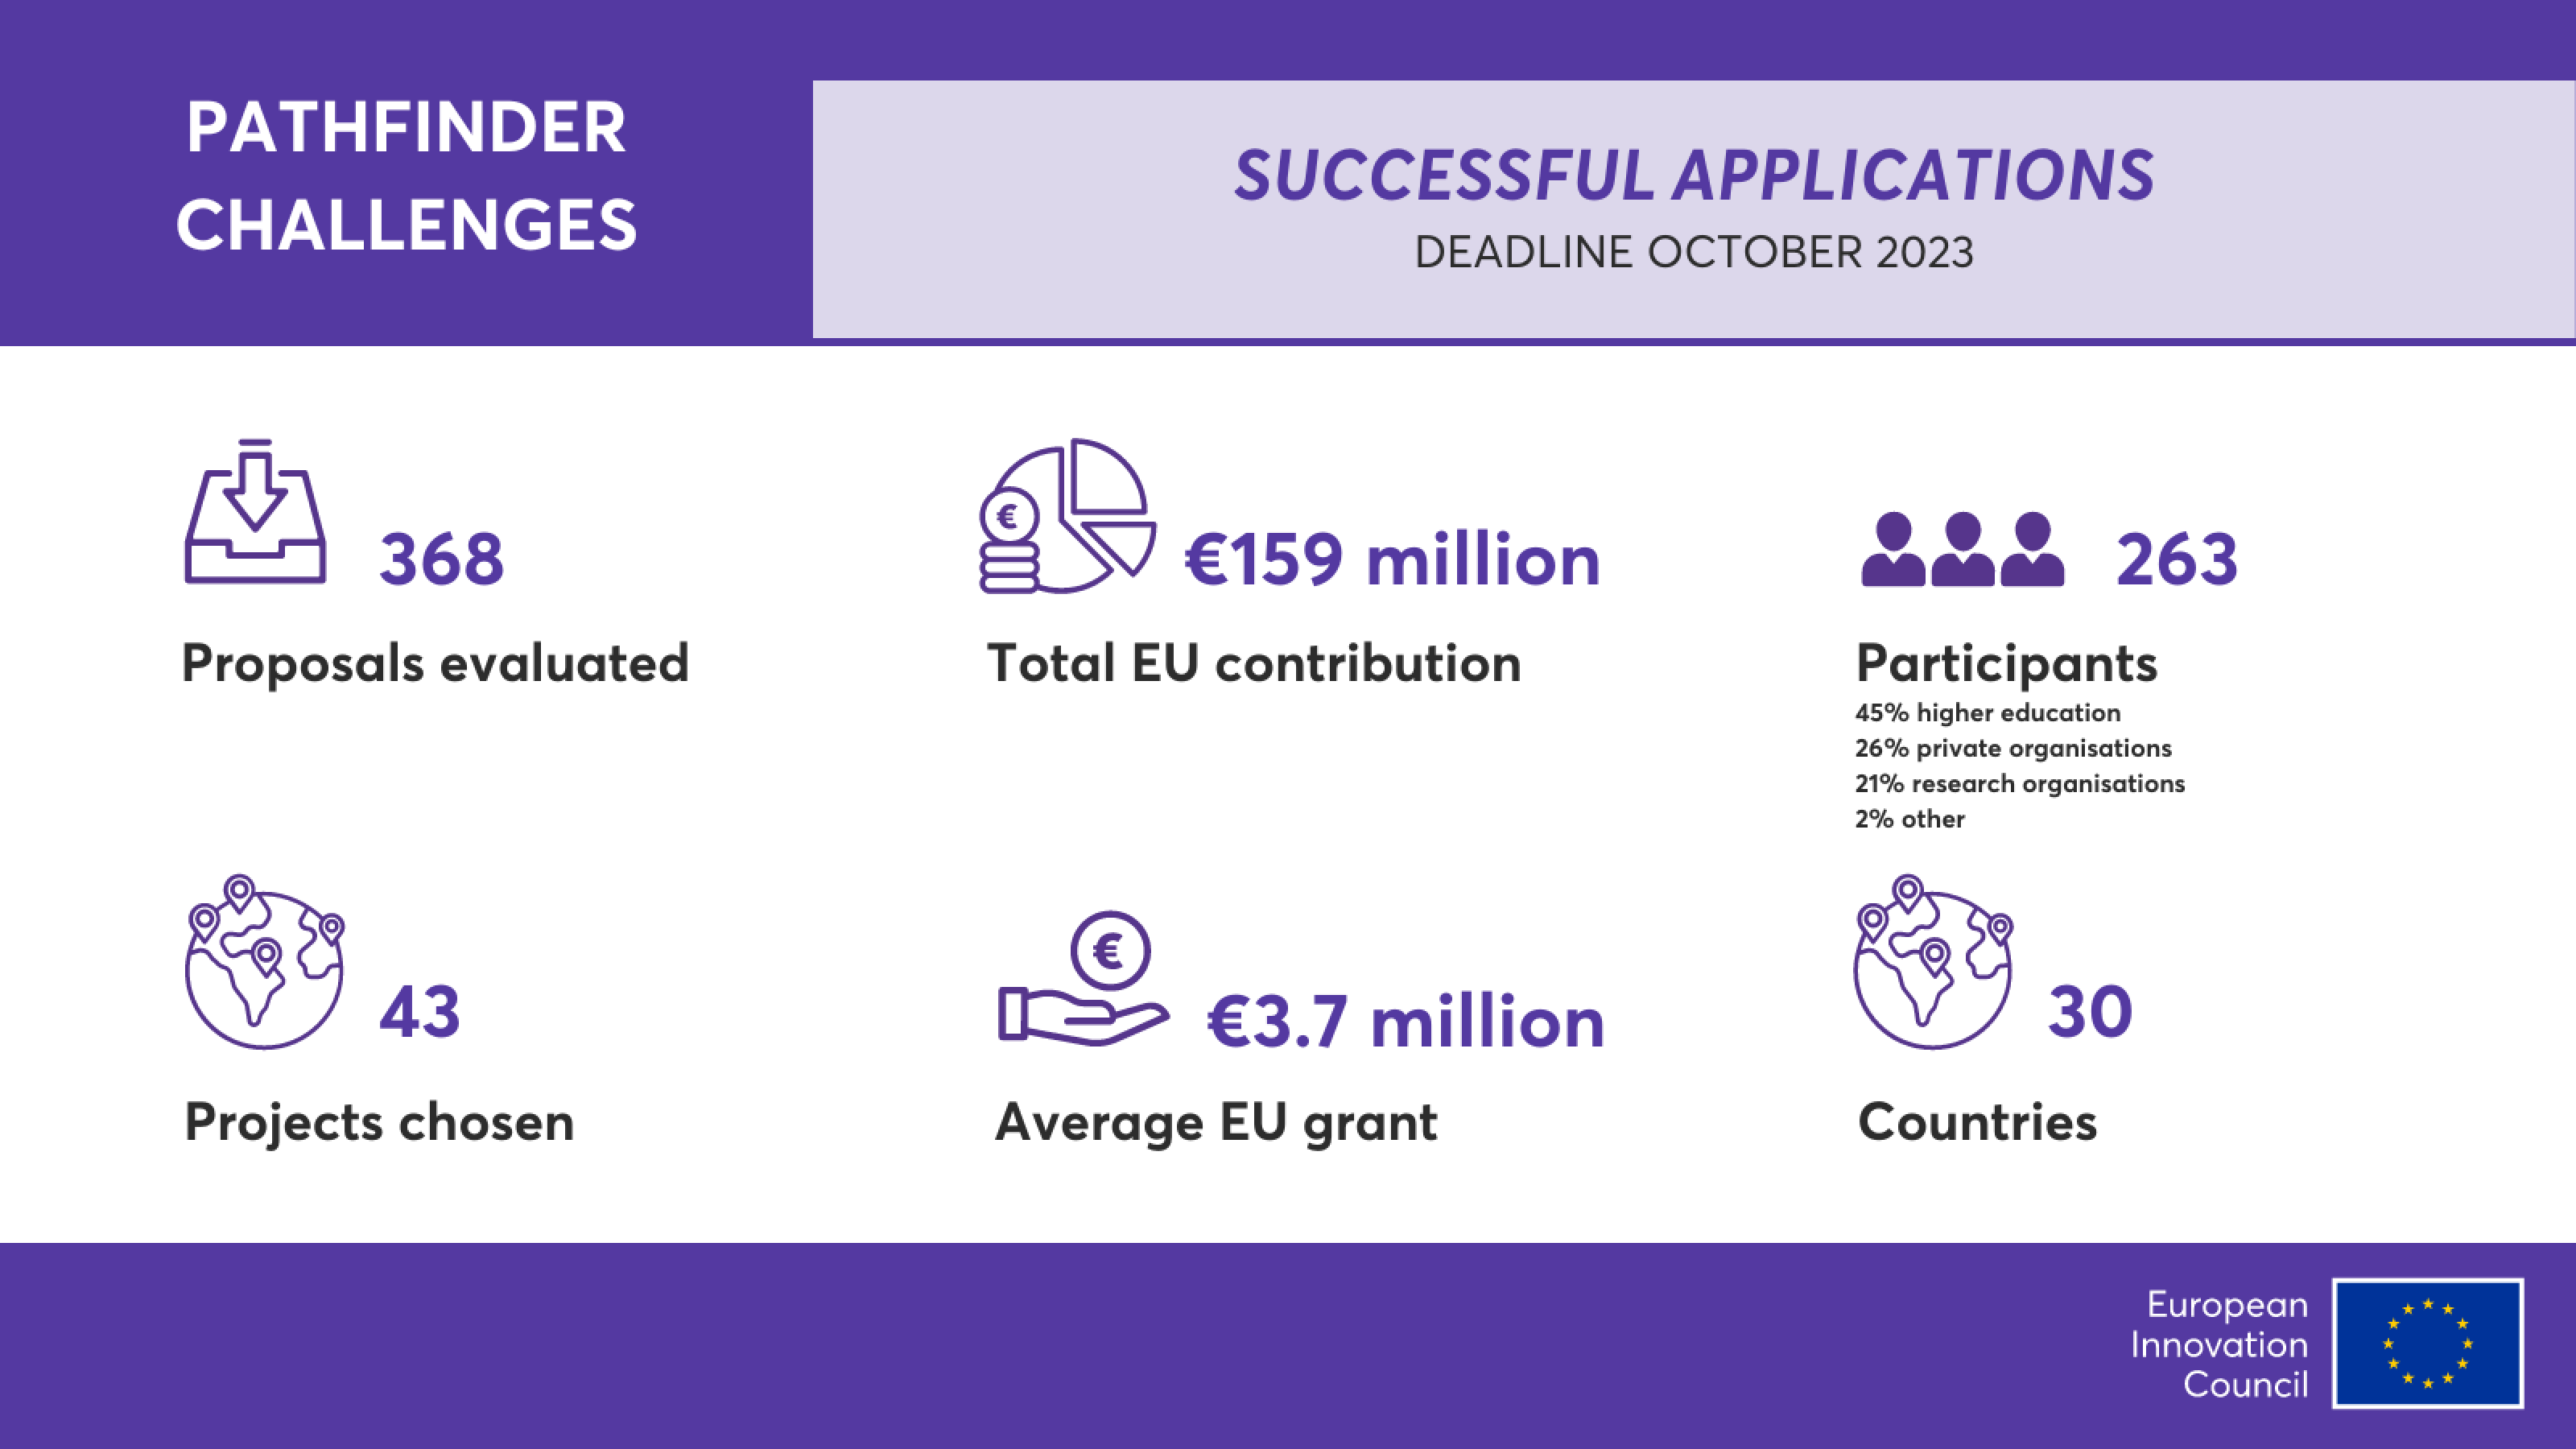 Αποτελέσματα EIC Pathfinder Challenges 2023: πάνω από 150 εκατομμύρια ευρώ για την υποστήριξη ερευνητικών έργων αιχμής σε βασικούς τεχνολογικούς τομείς 